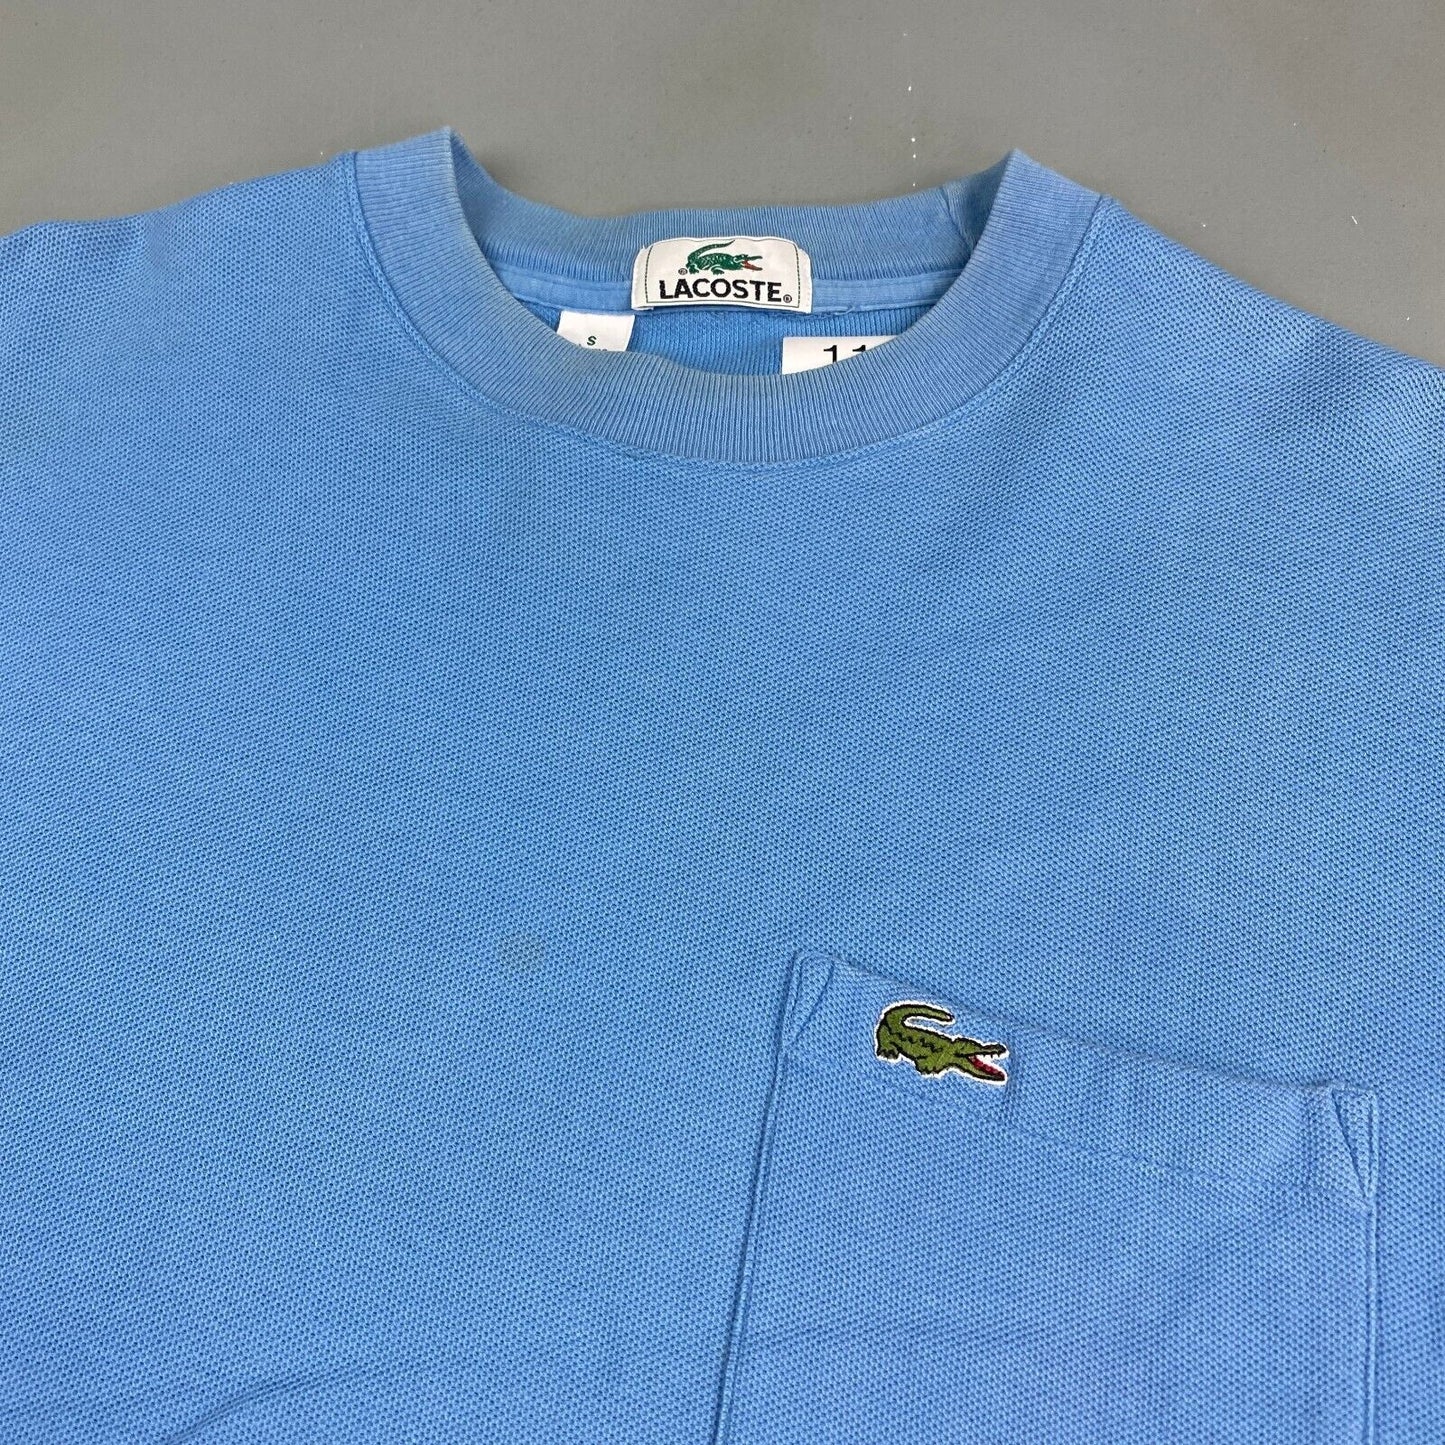 VINTAGE Lacoste Sm Alligator Blue Pocket T-Shirt sz Small Men Adult